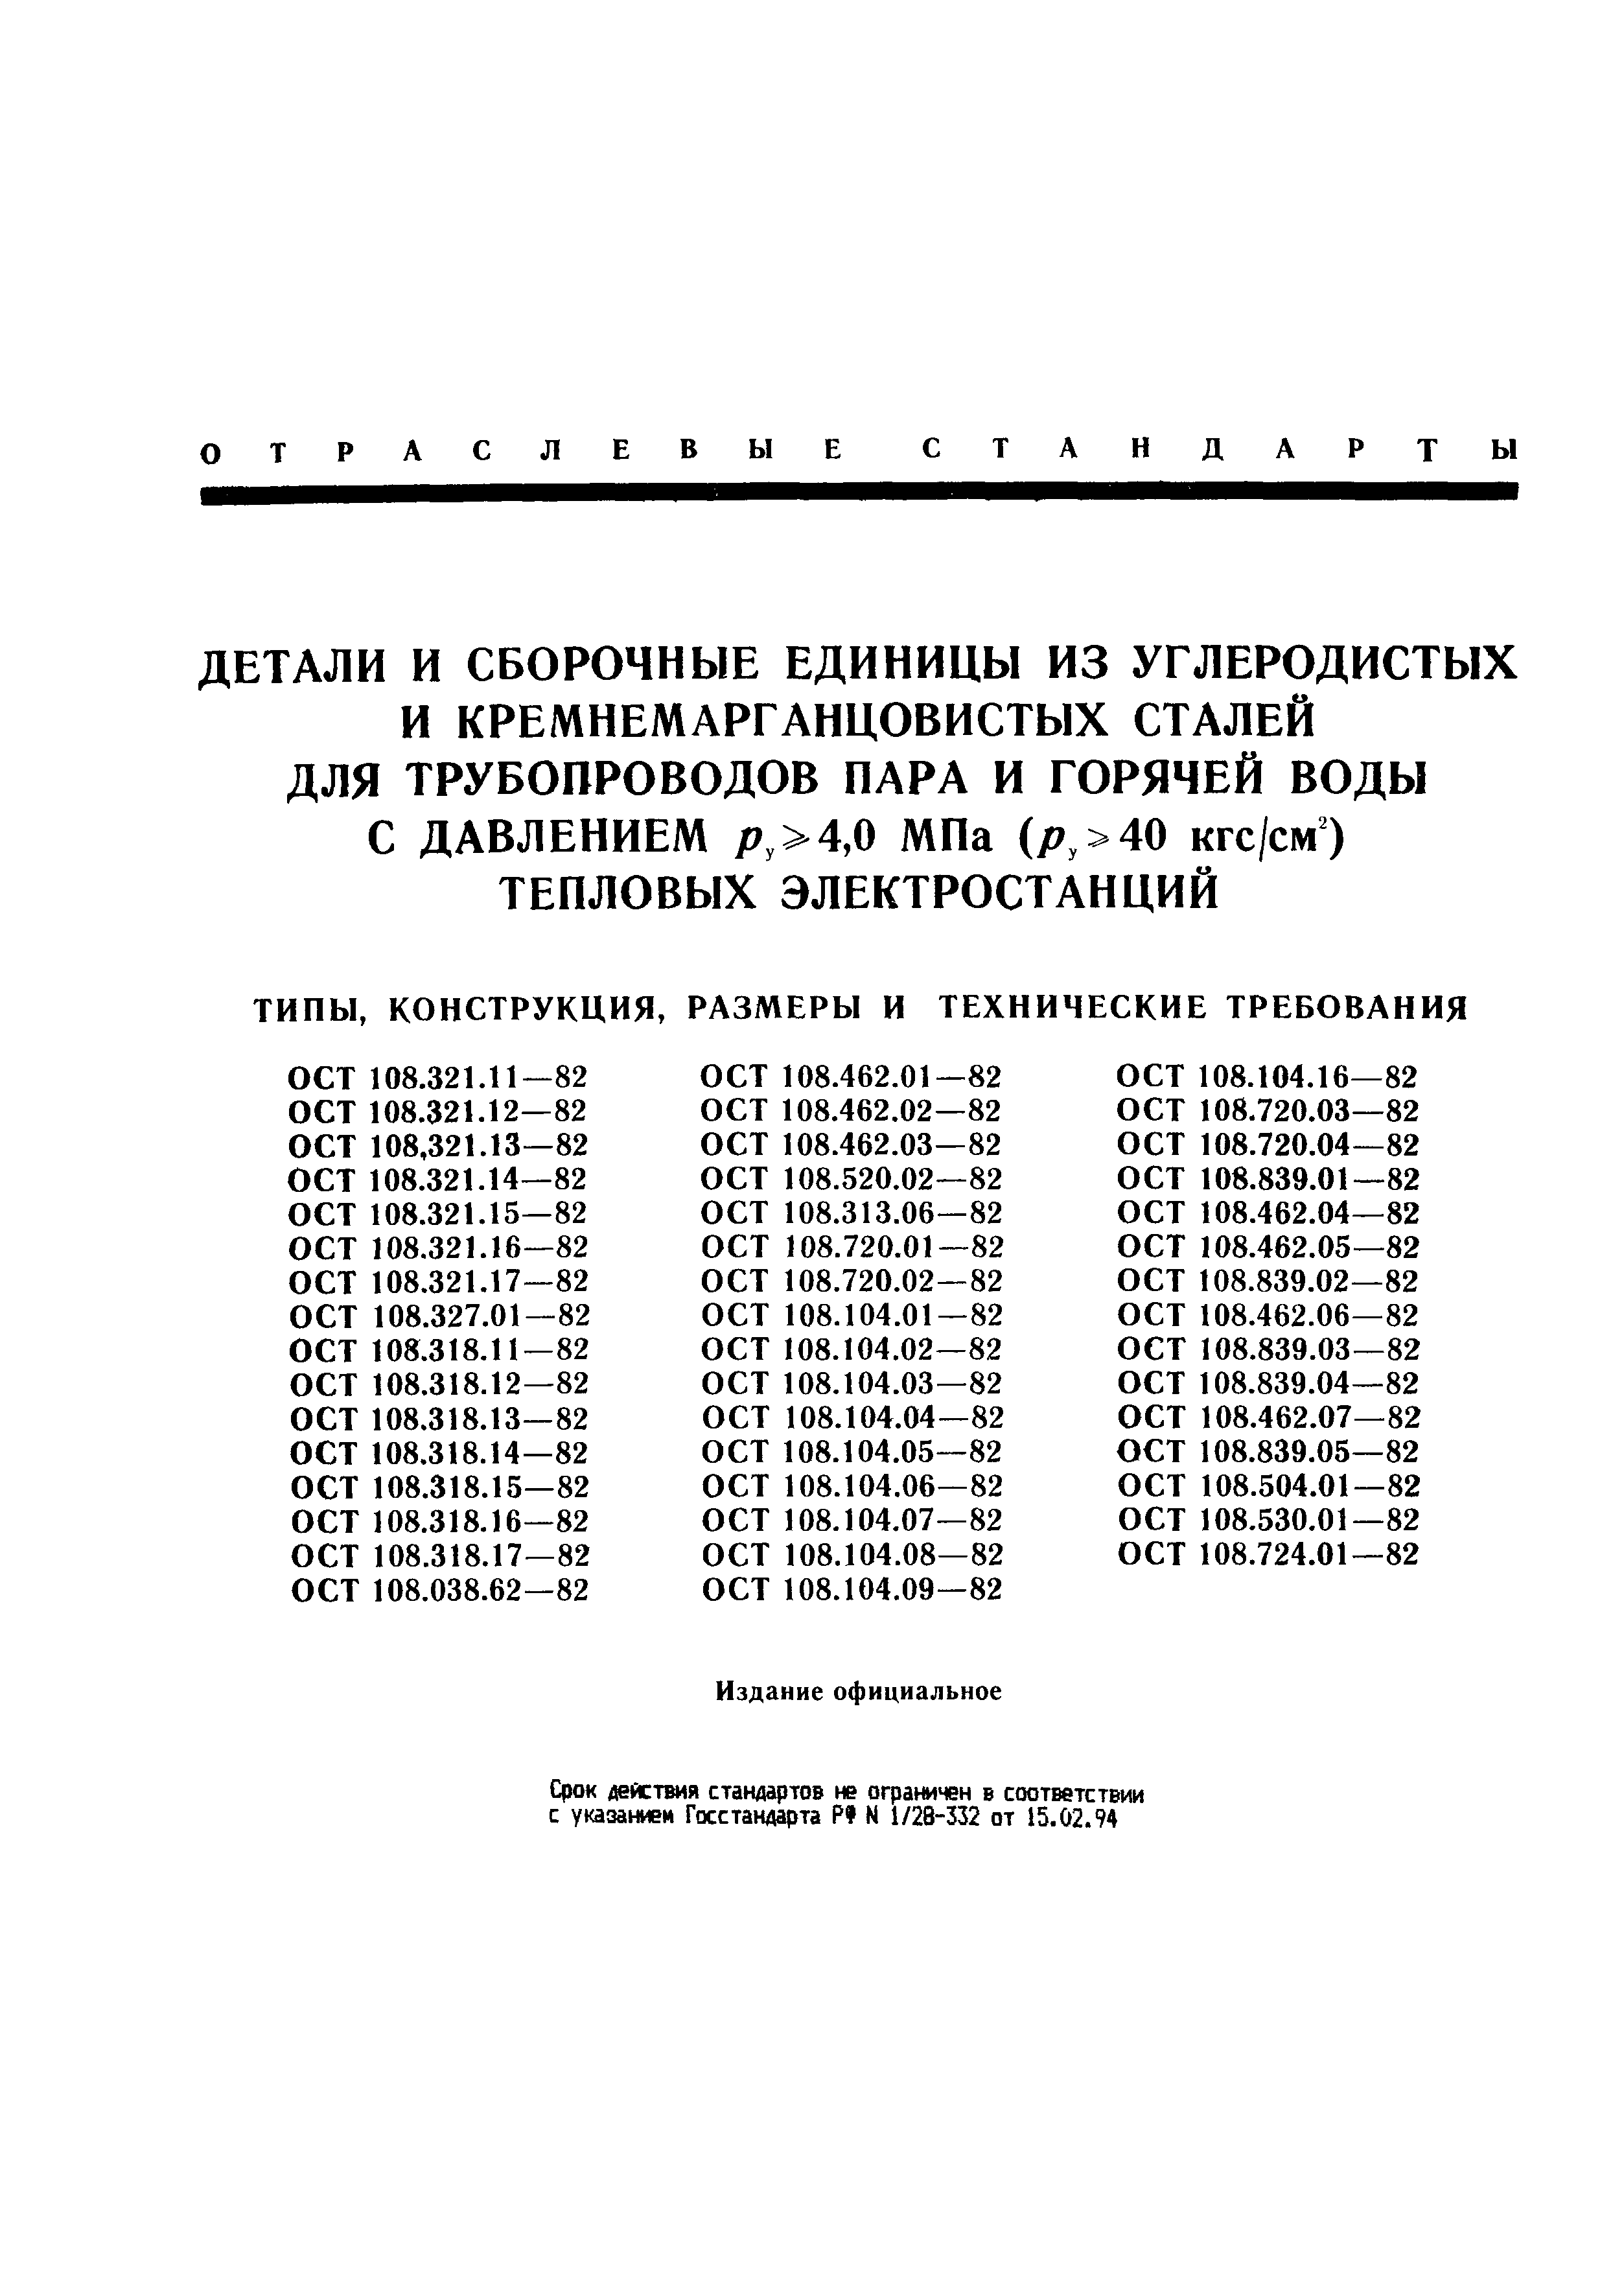 ОСТ 108.321.16-82